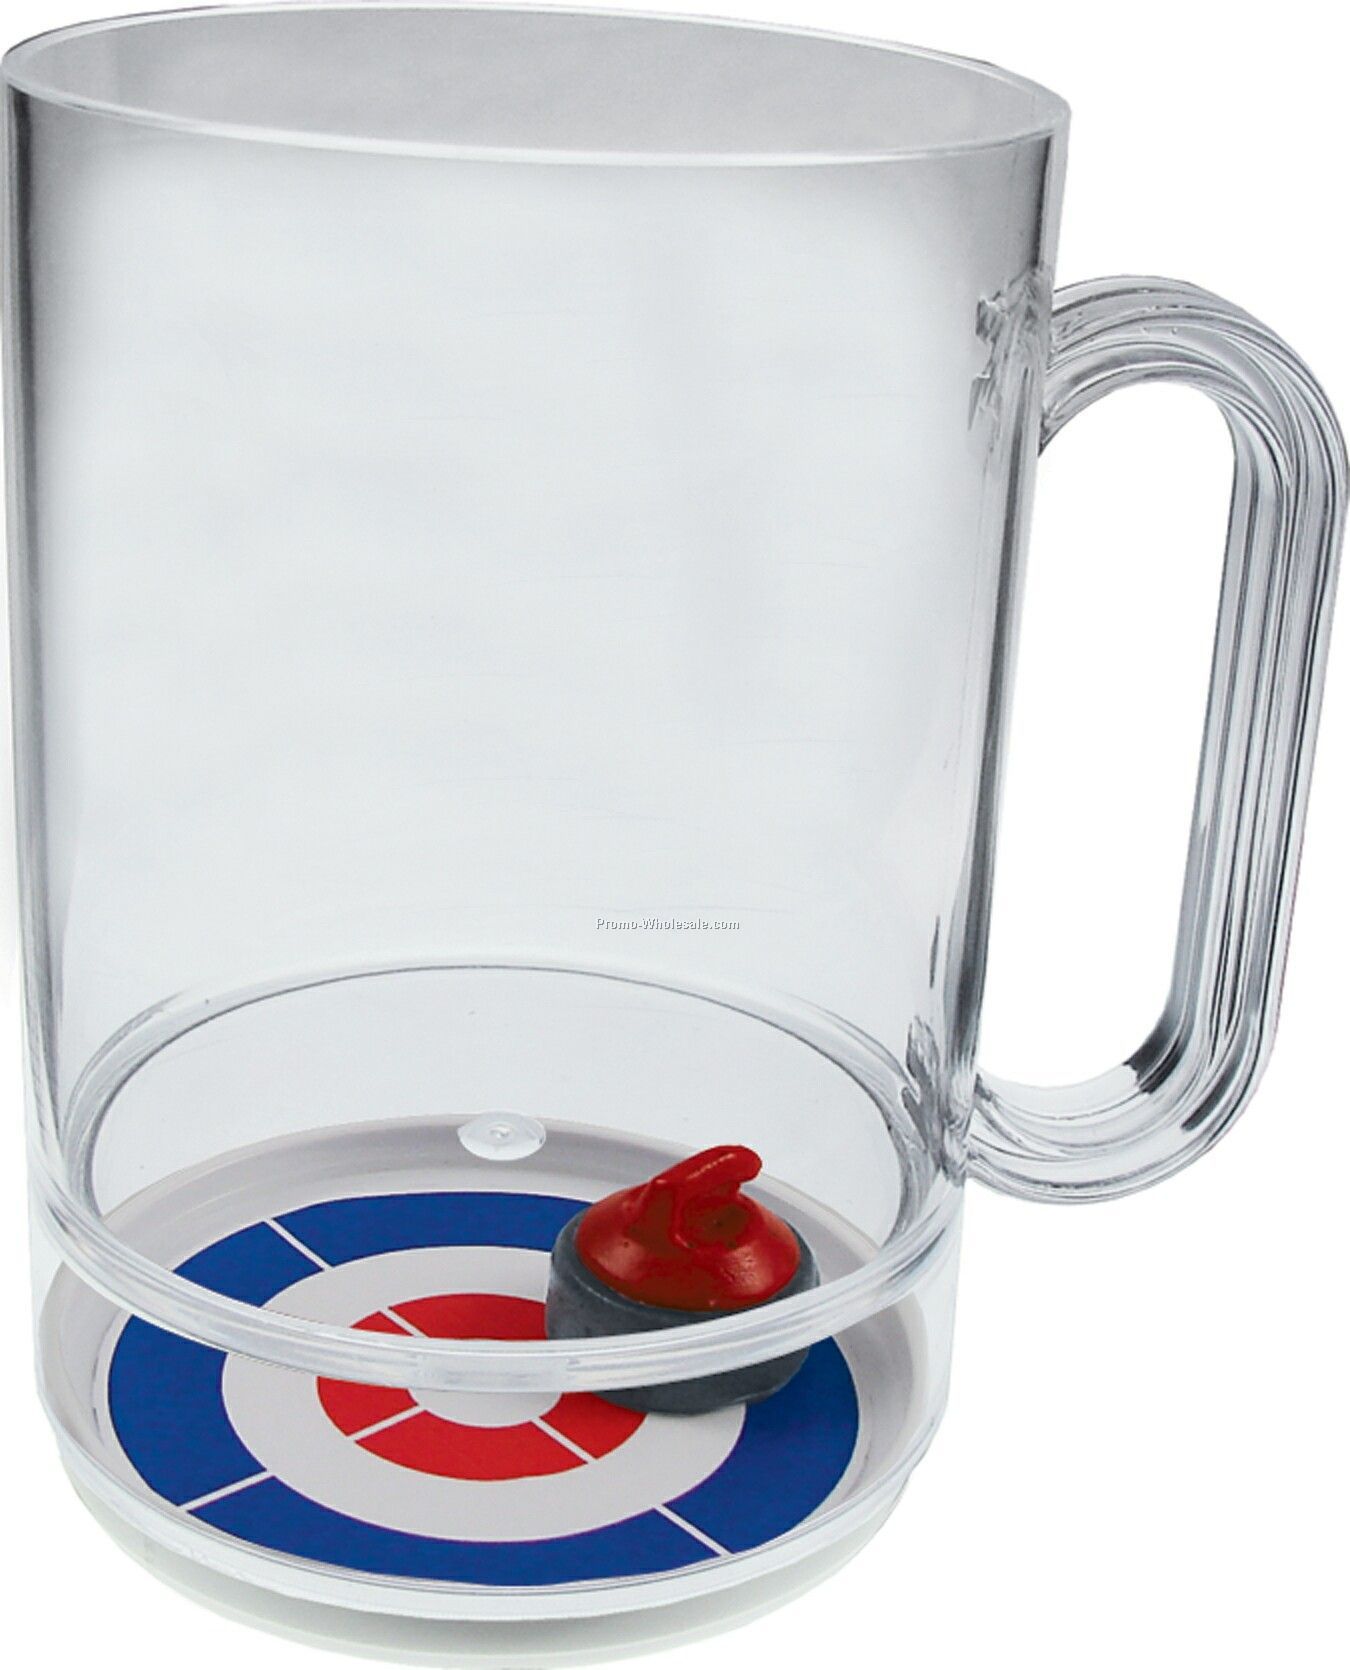 16 Oz. Curling Compartment Mug